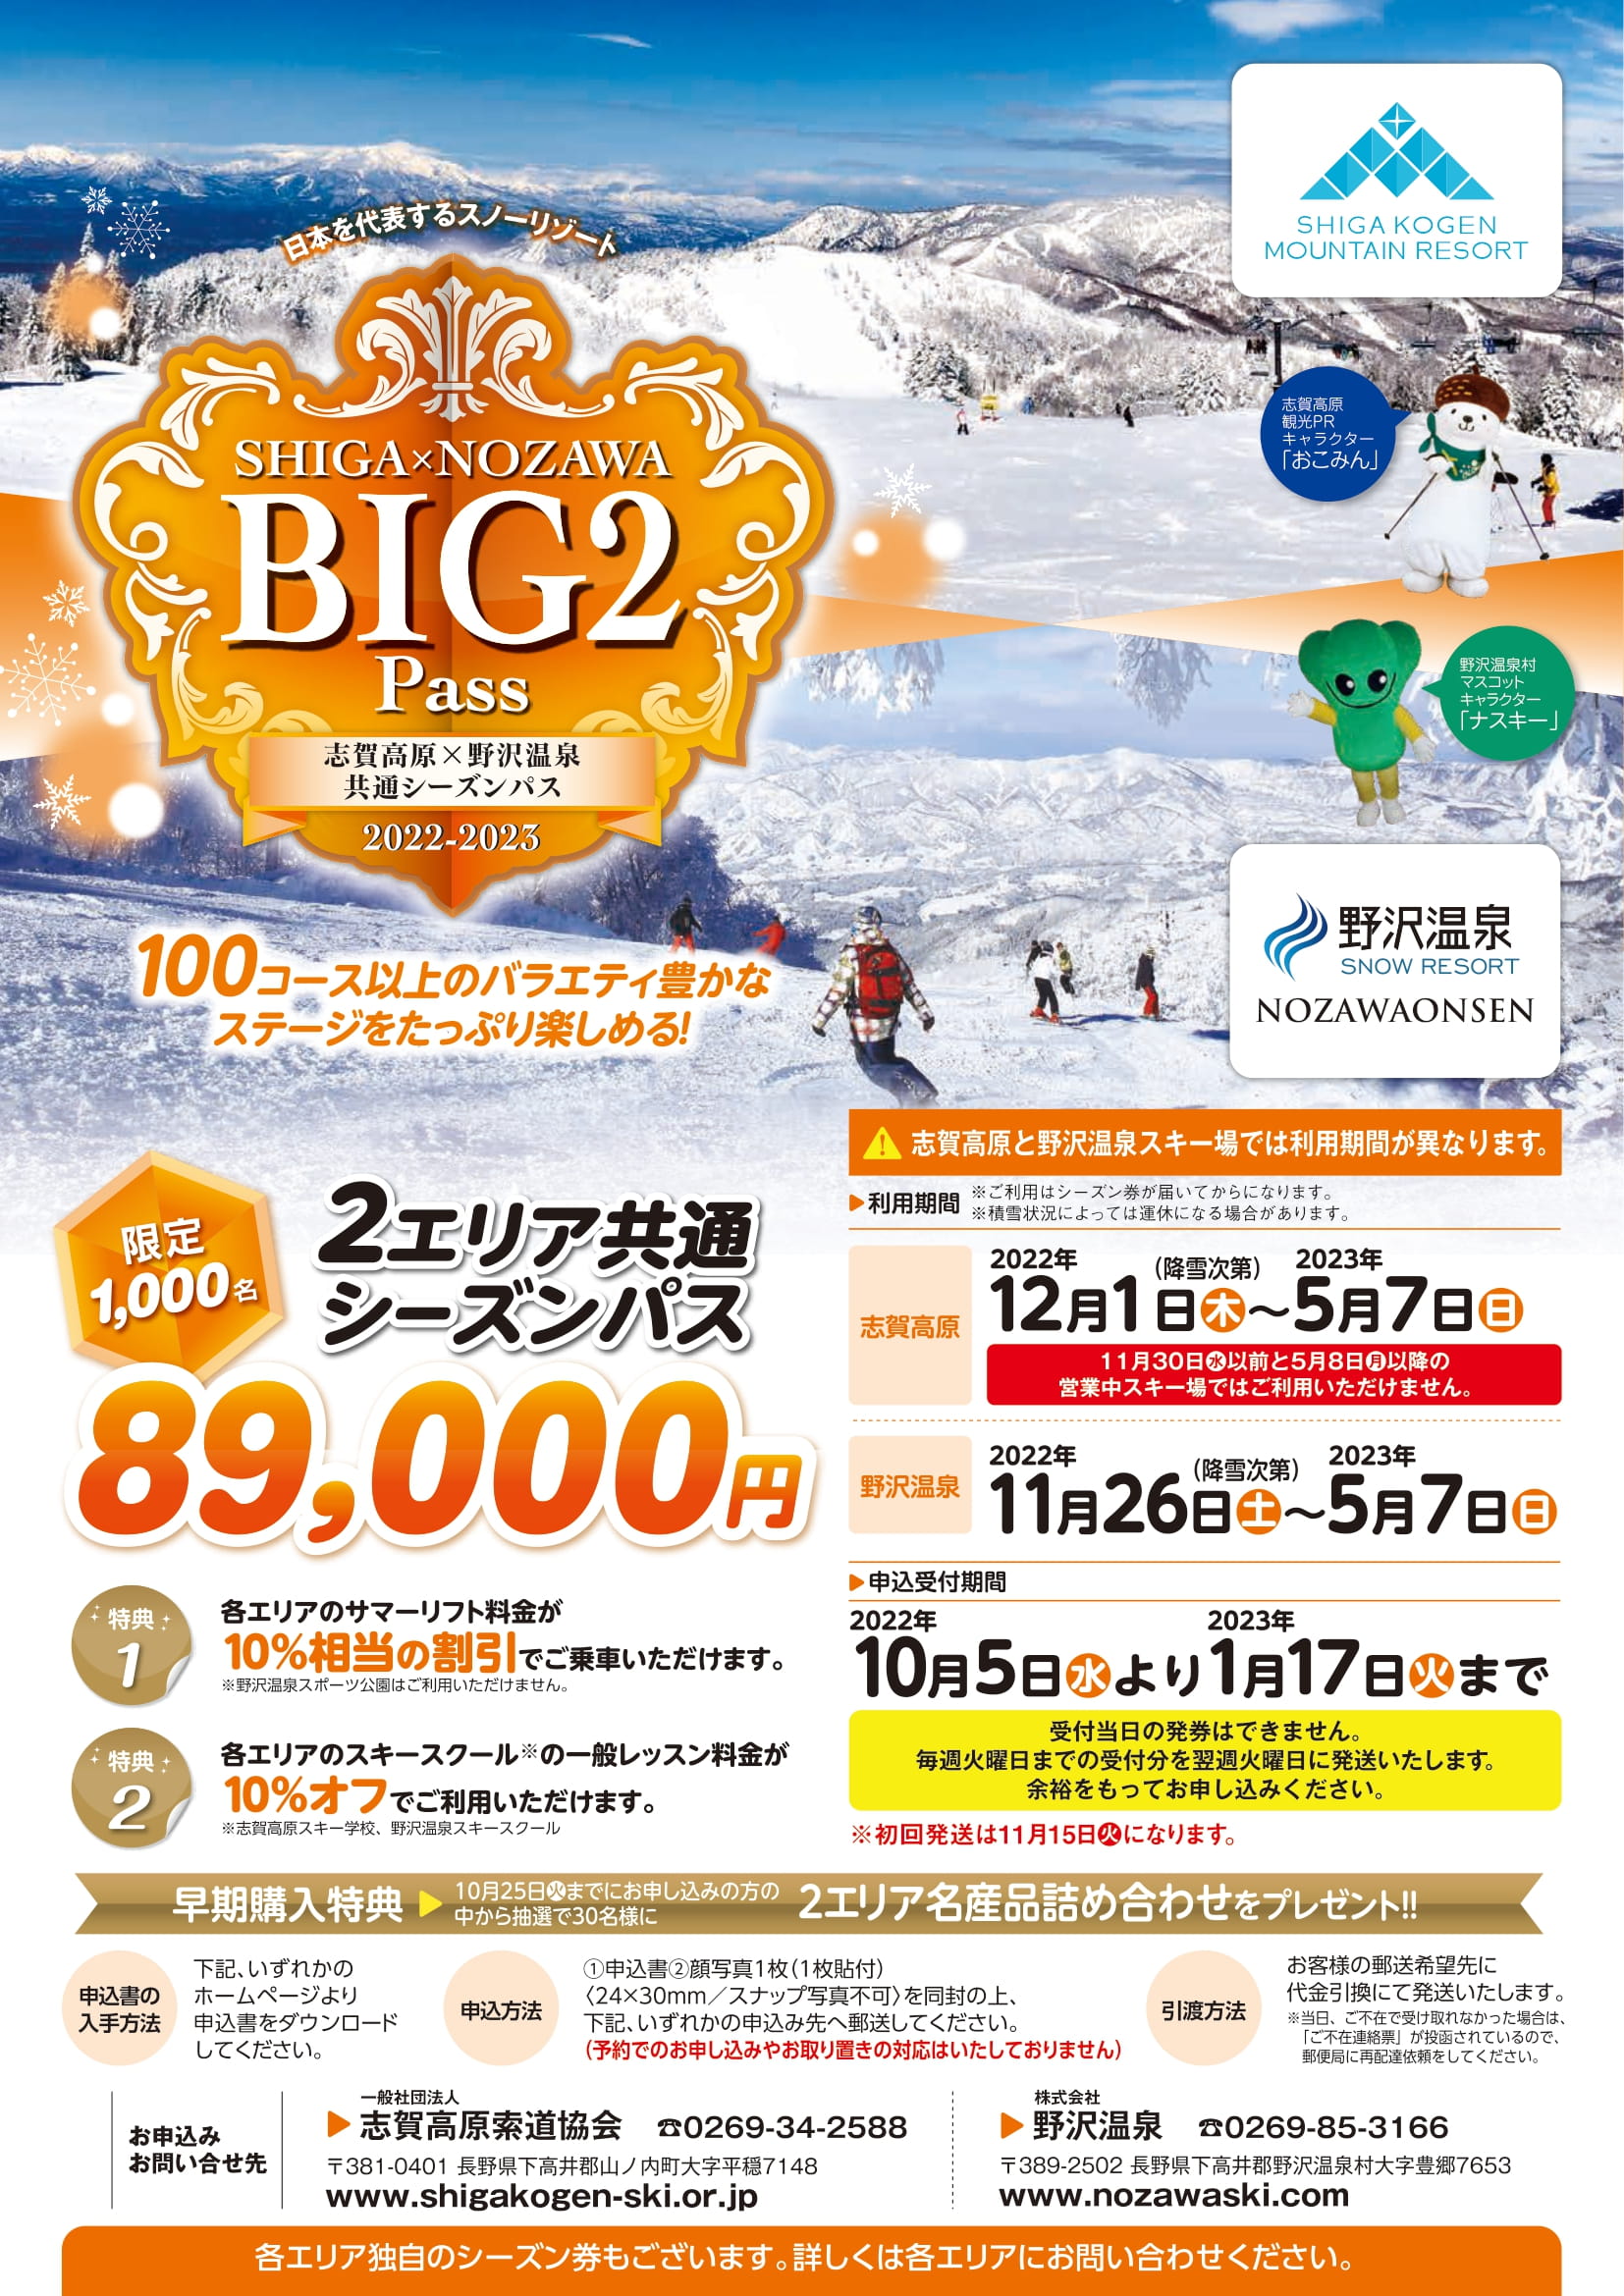 ◆SHIGA×NOZAWA BIG２PASS販売についてお知らせ